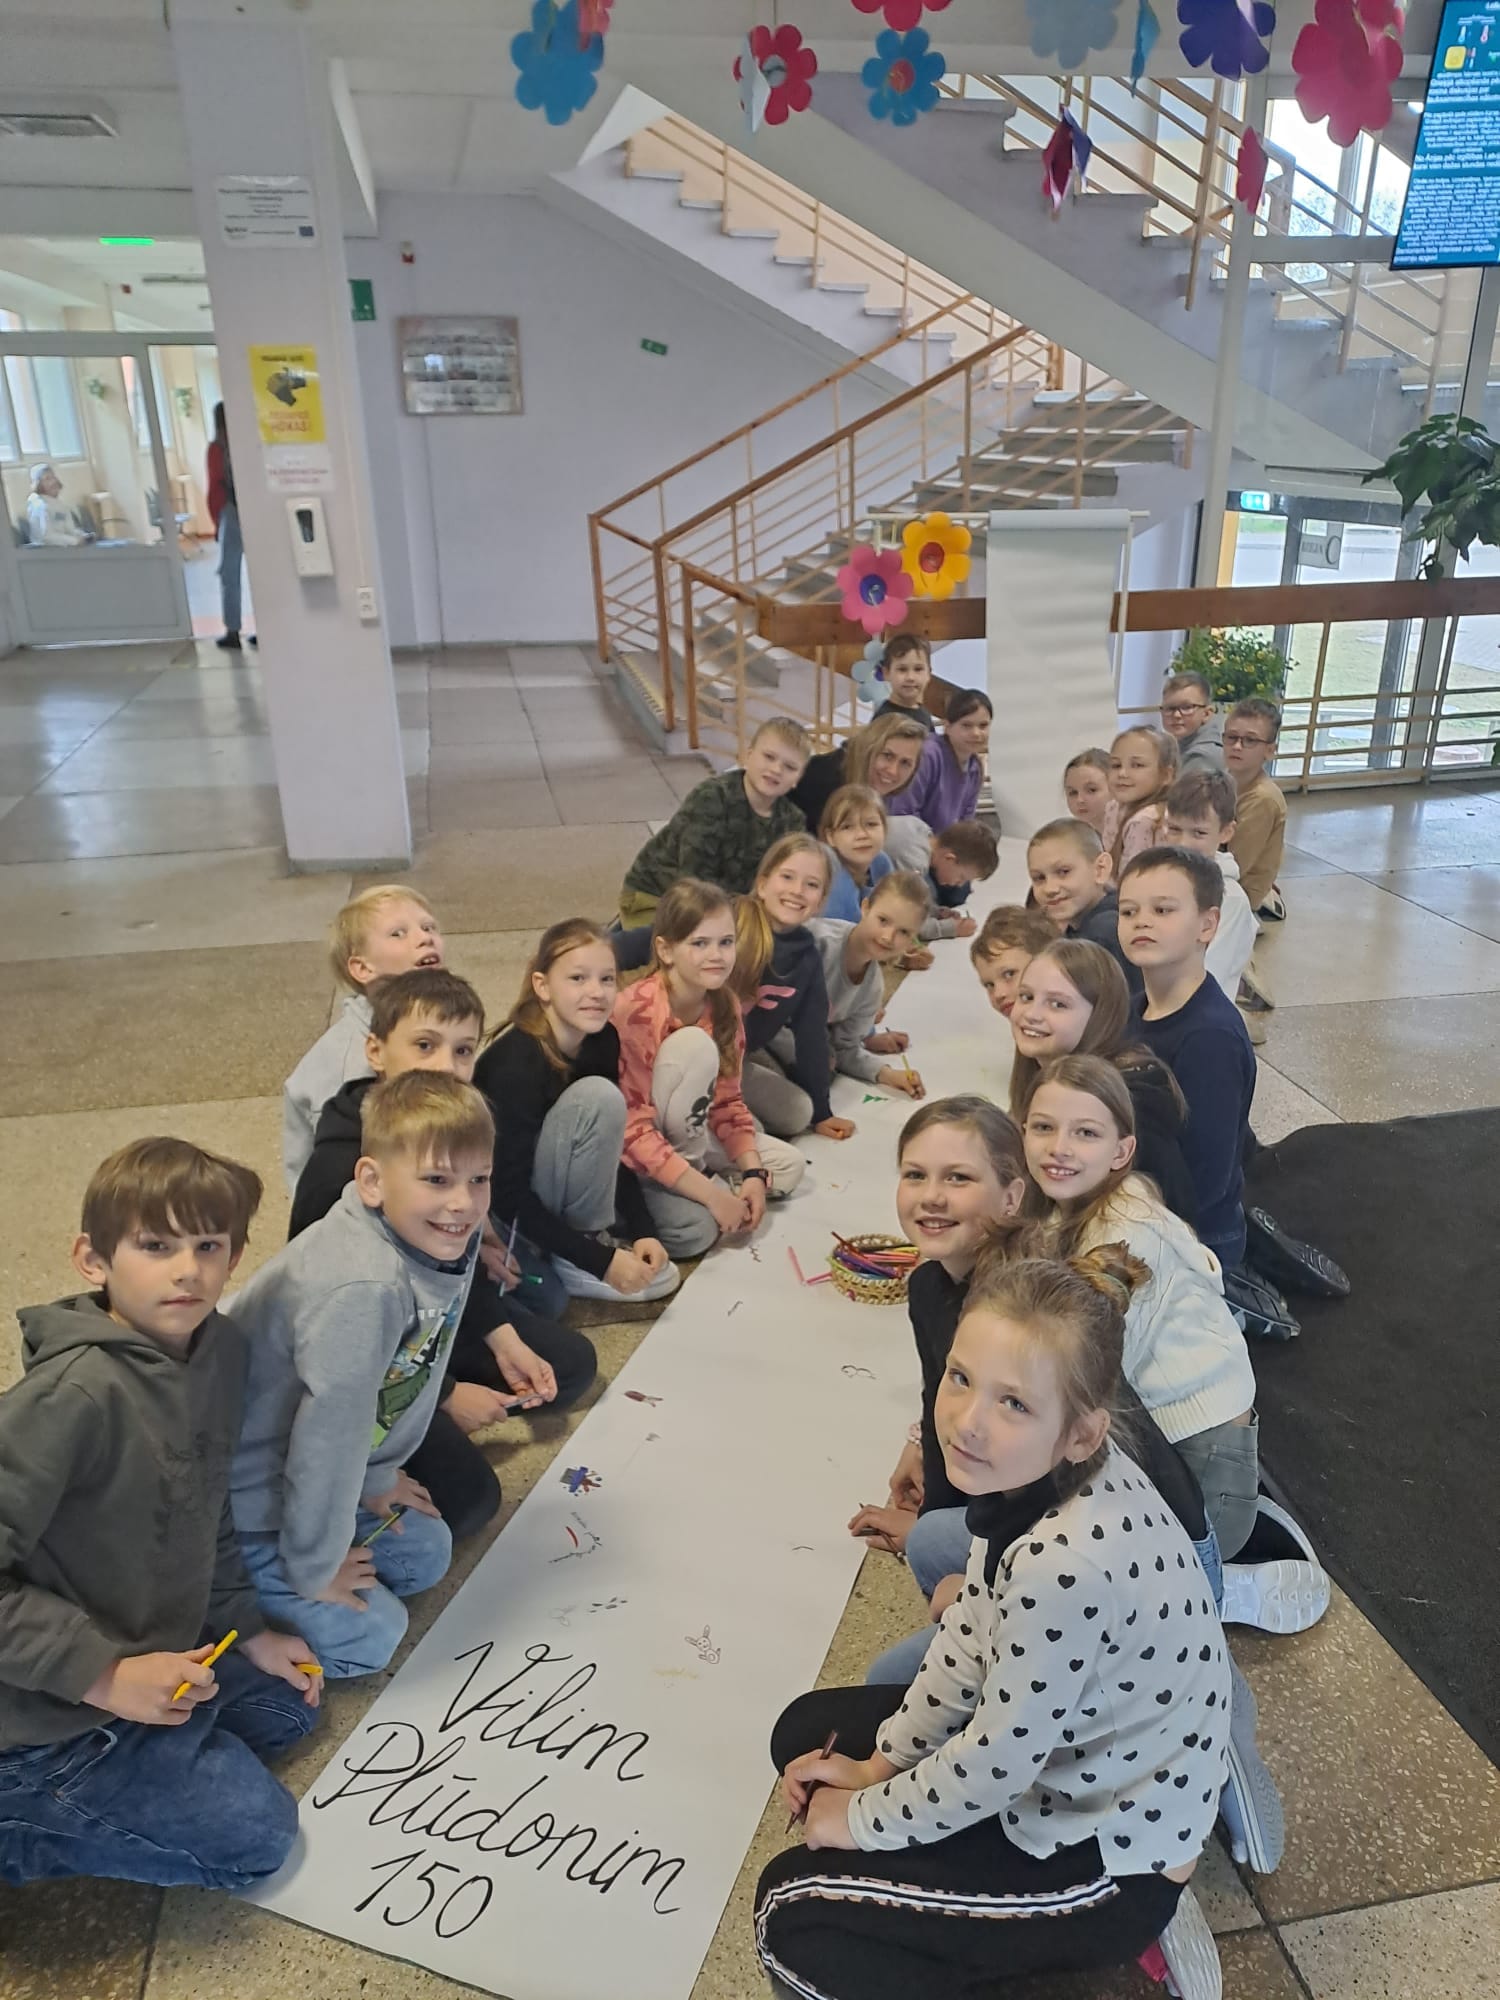 Mākslas jomas nedēļa ar nosaukumu “Vilim Plūdonim – 150” Rīgas Imantas vidusskolā ir sākusies!